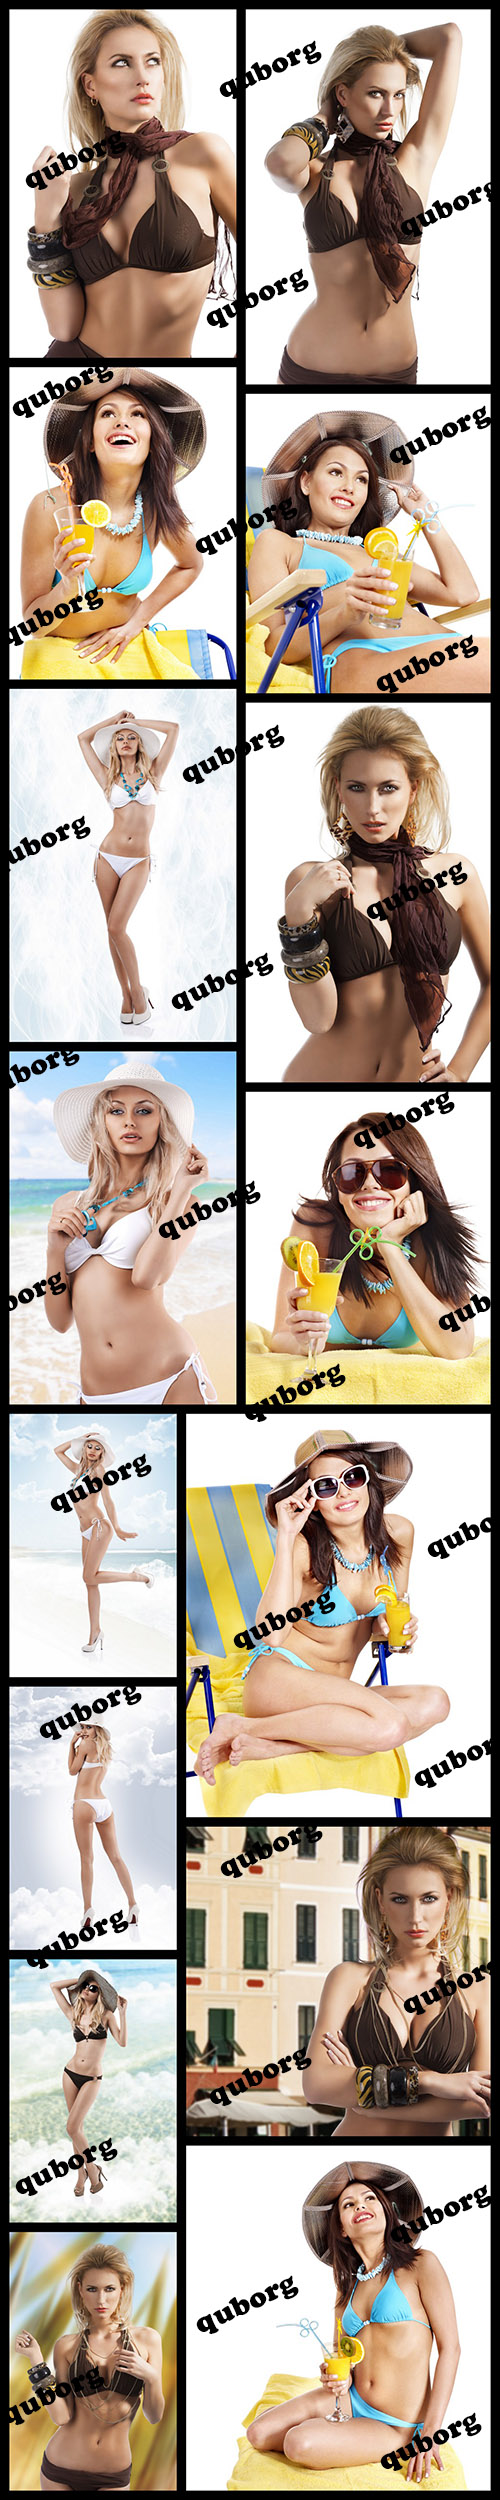 Stock Photos - Beautiful Girls in Bikini